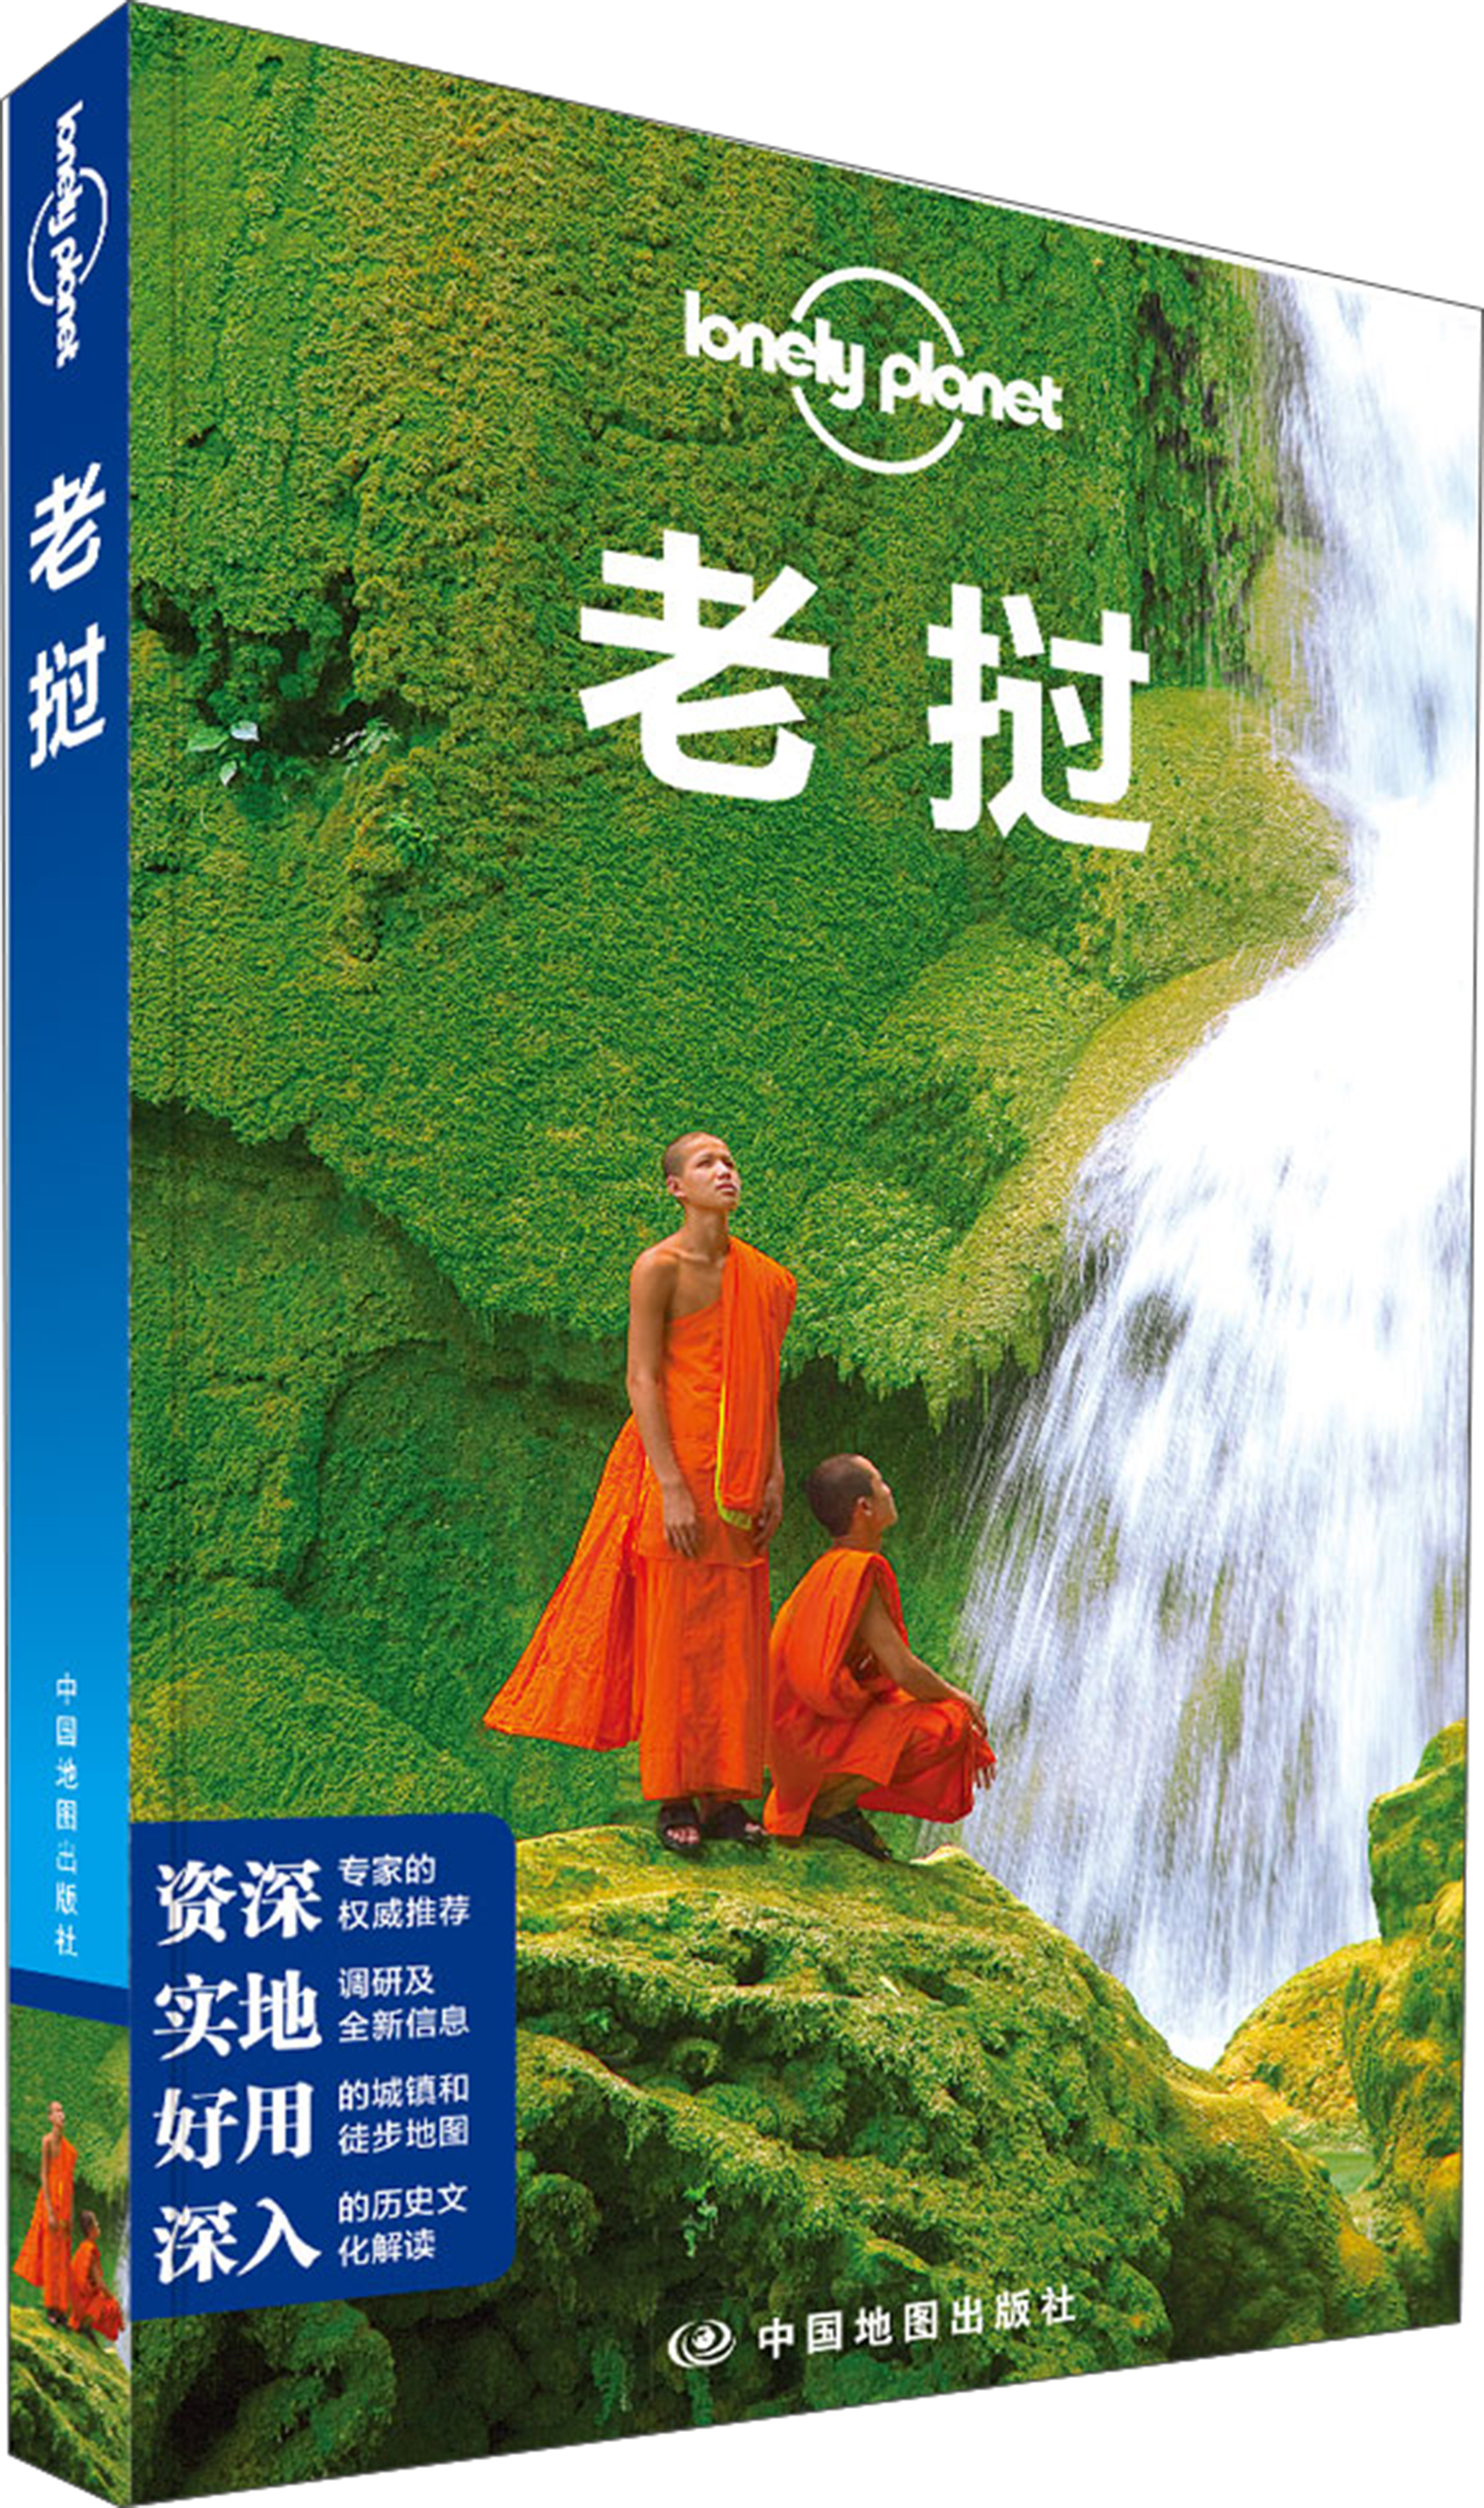 孤独星球Lonely Planet旅行指南系列：老挝